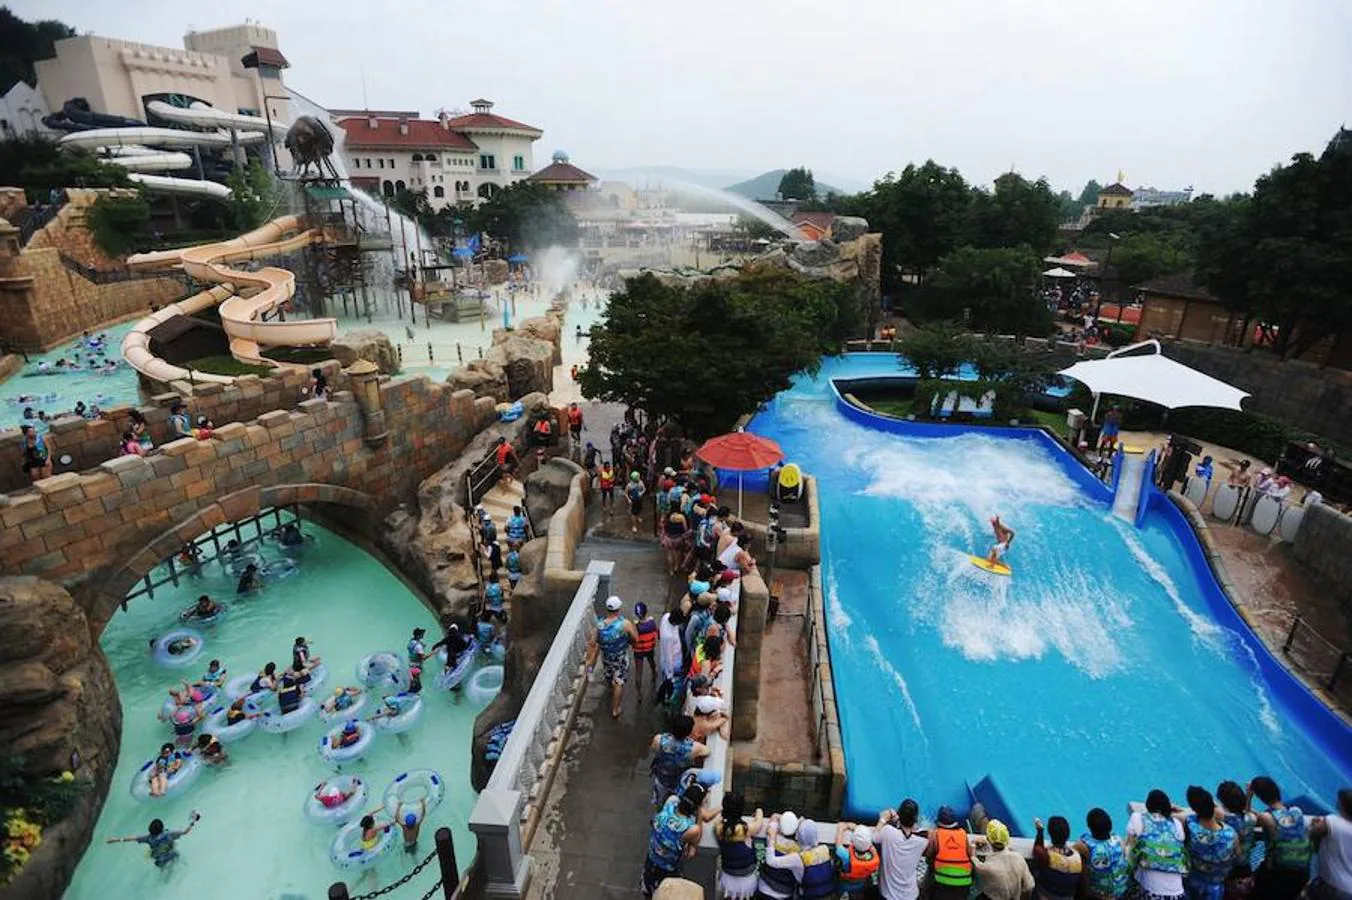 El parque incluye una piscina de olas, una piscina de arena, una piscina para niños pequeños, varios toboganes de agua y saunas.